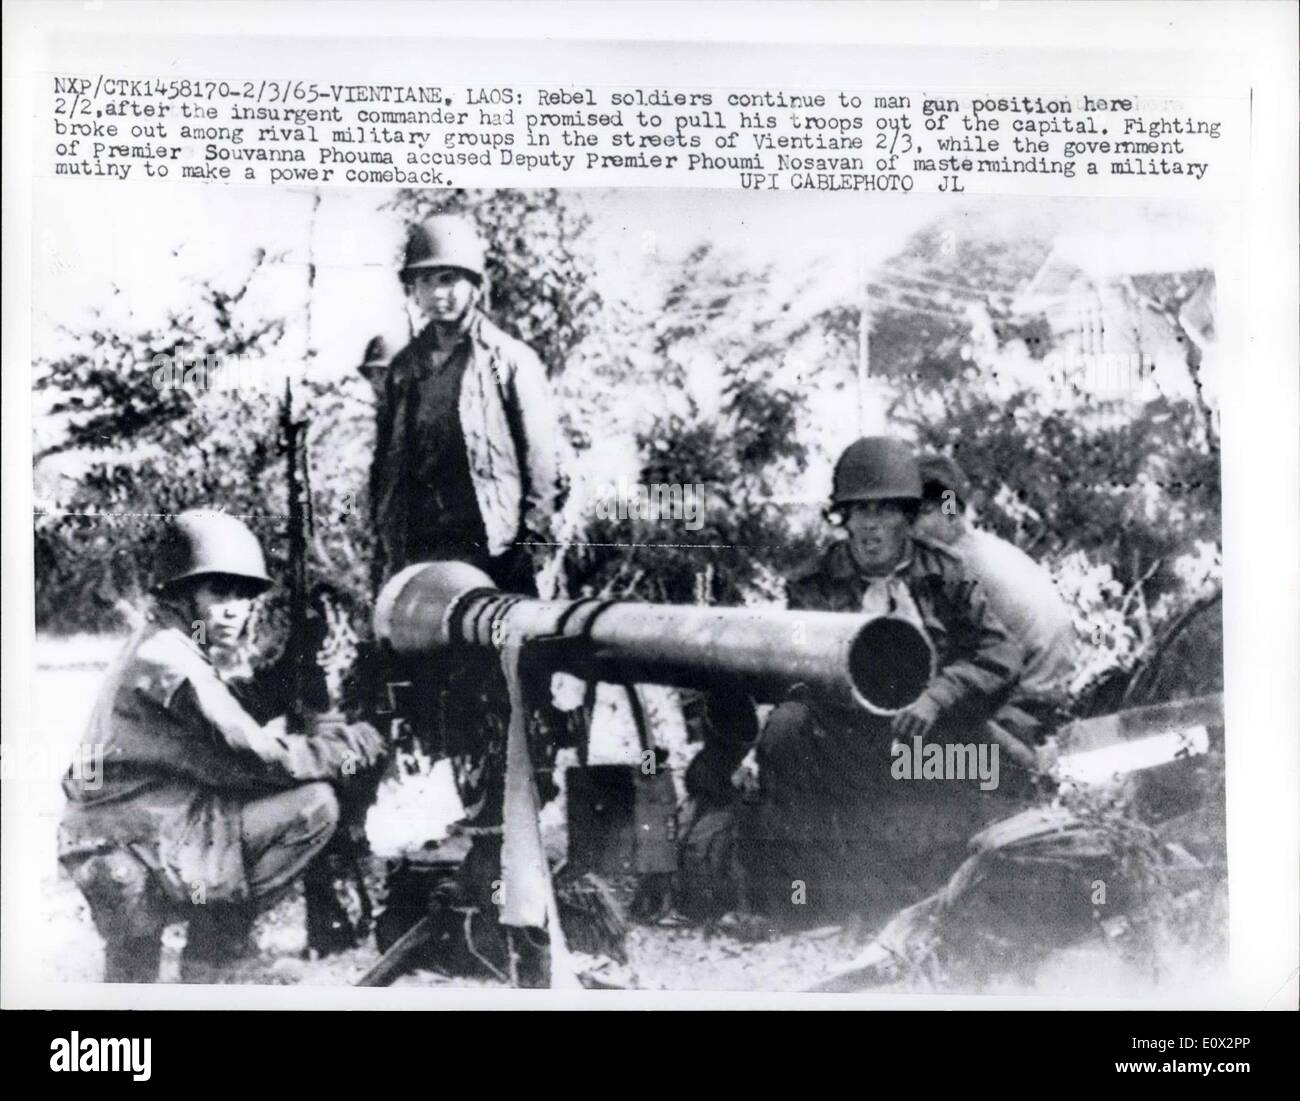 2. März 1965 - Vietiane, Laos: Rebellensoldaten weiterhin Mann Gun Position hier 2/2, nachdem die Aufständischen Kommandant versprochen hatte, seine Trooos aus der Hauptstadt zu ziehen. Kämpfe brachen zwischen rivalisierenden militärischen Gruppen in den Straßen von Vientiane 2/3, während die Regierung von Premier Souvanna Phouma stellvertretende Premier Phoumi Nosavan der Drahtzieher einer militärischen Gemeinschaft um ein macht-Comeback vorgeworfen. Stockfoto